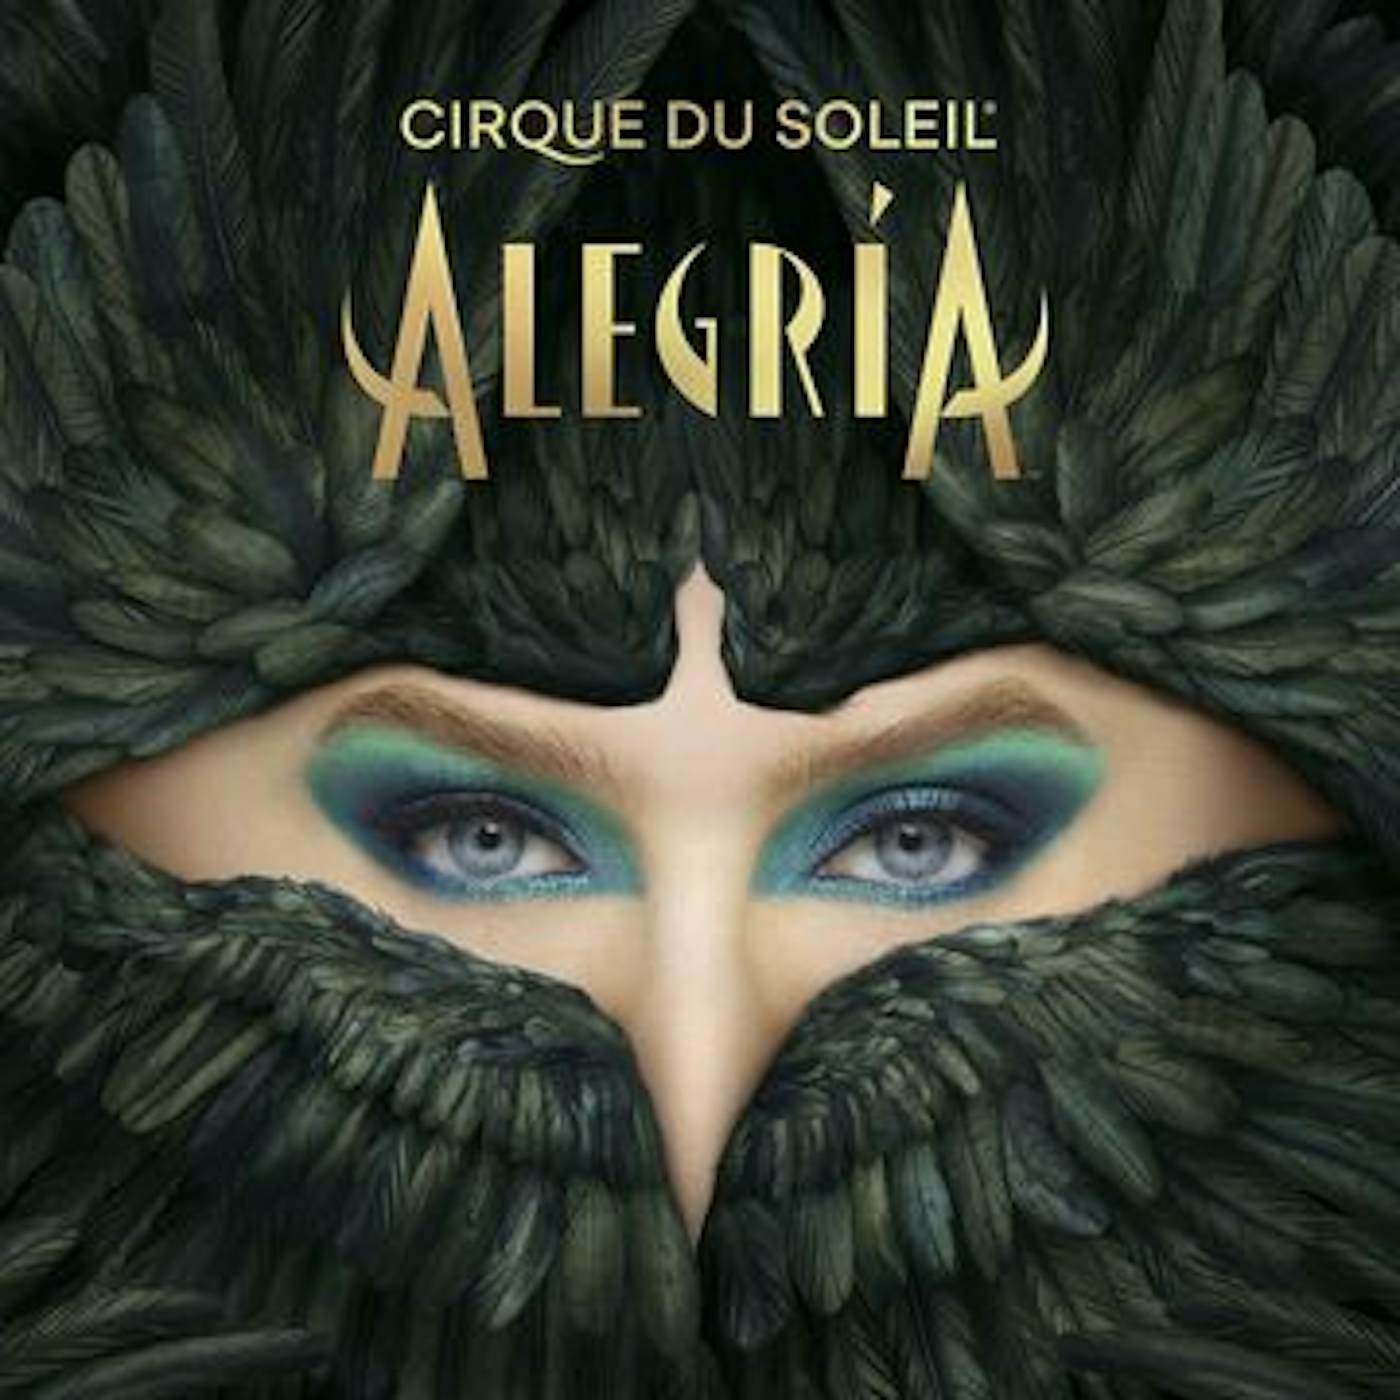 Cirque du Soleil ALGERIA CD